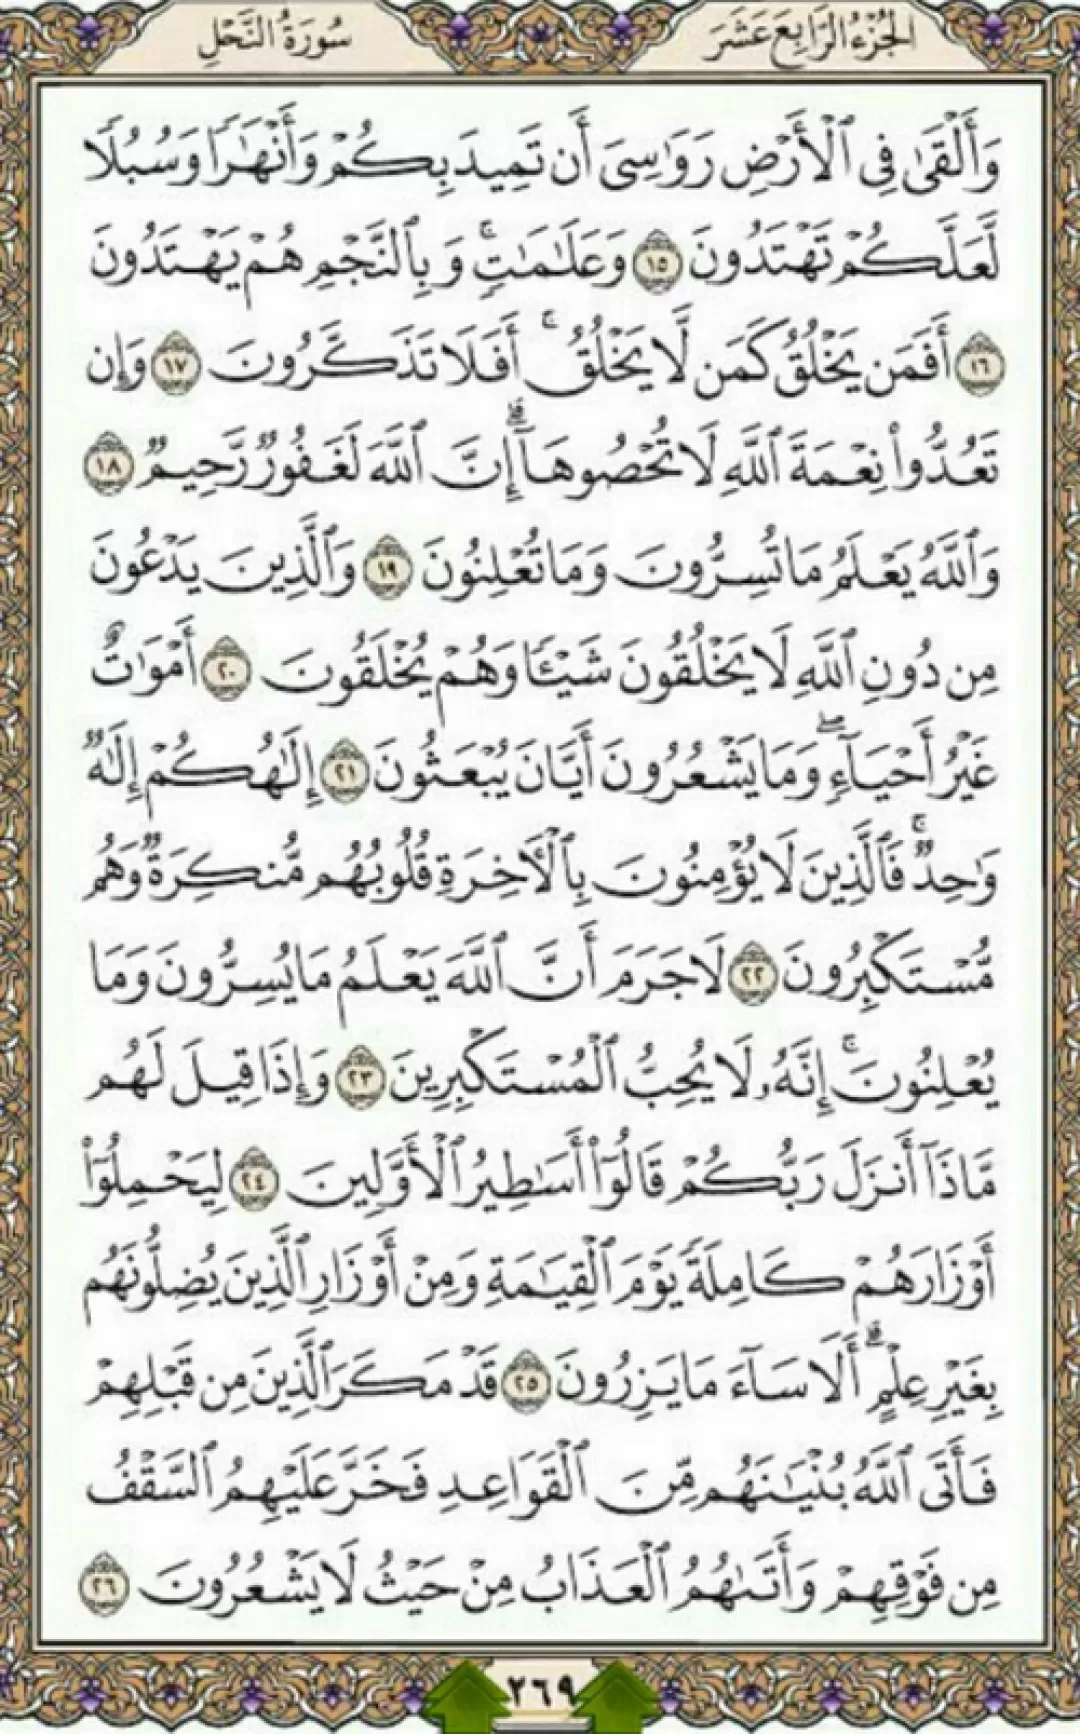 روزانه یک صفحه از نسیم الهی قرآن